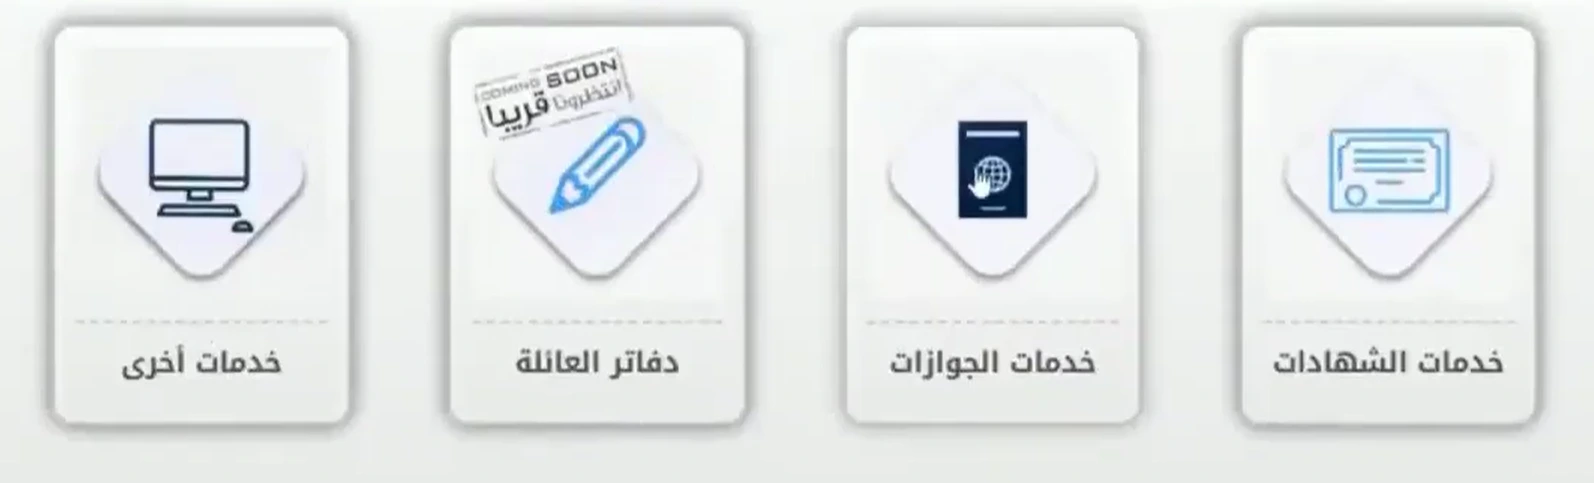 رابط تجديد جواز السفر الأردني إالكترونيا 